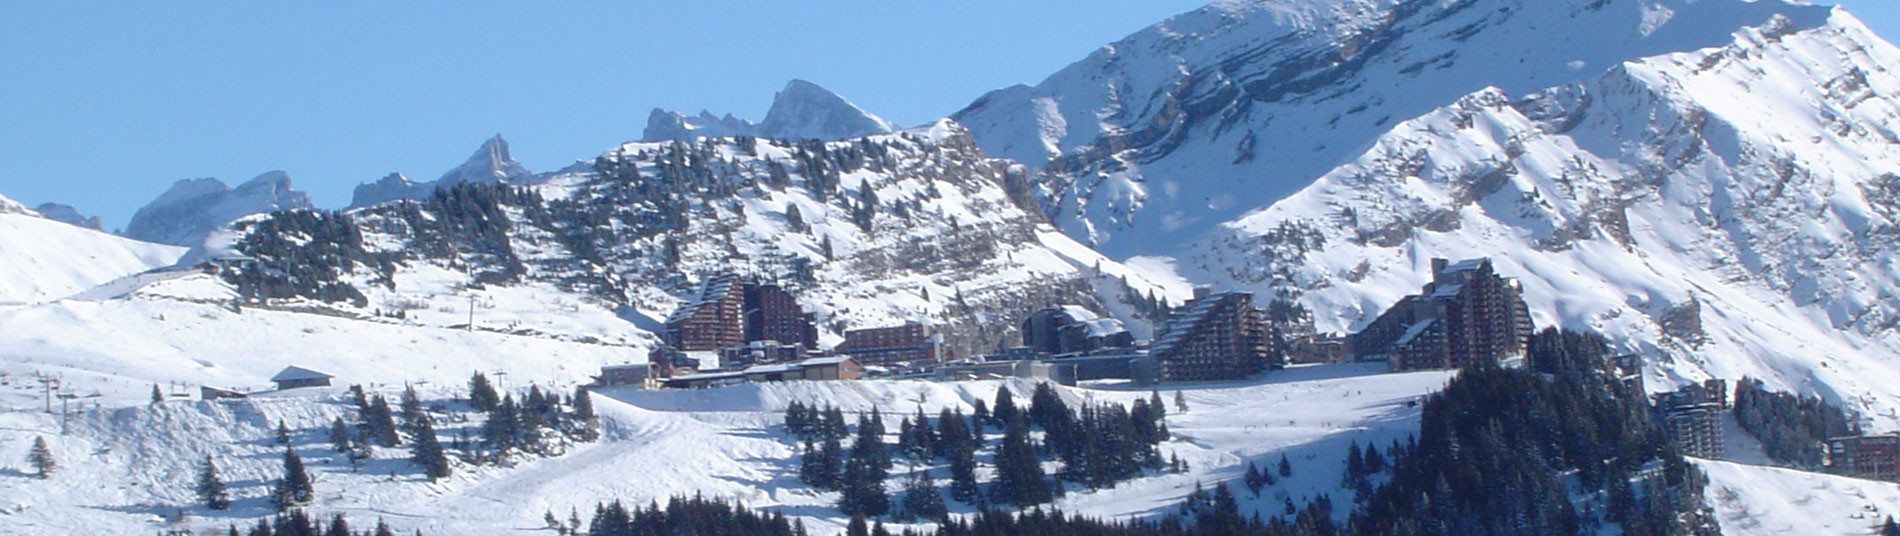 Hotels a totes les estacions d\’esquí - España, Andorra, Francia, Suiza....